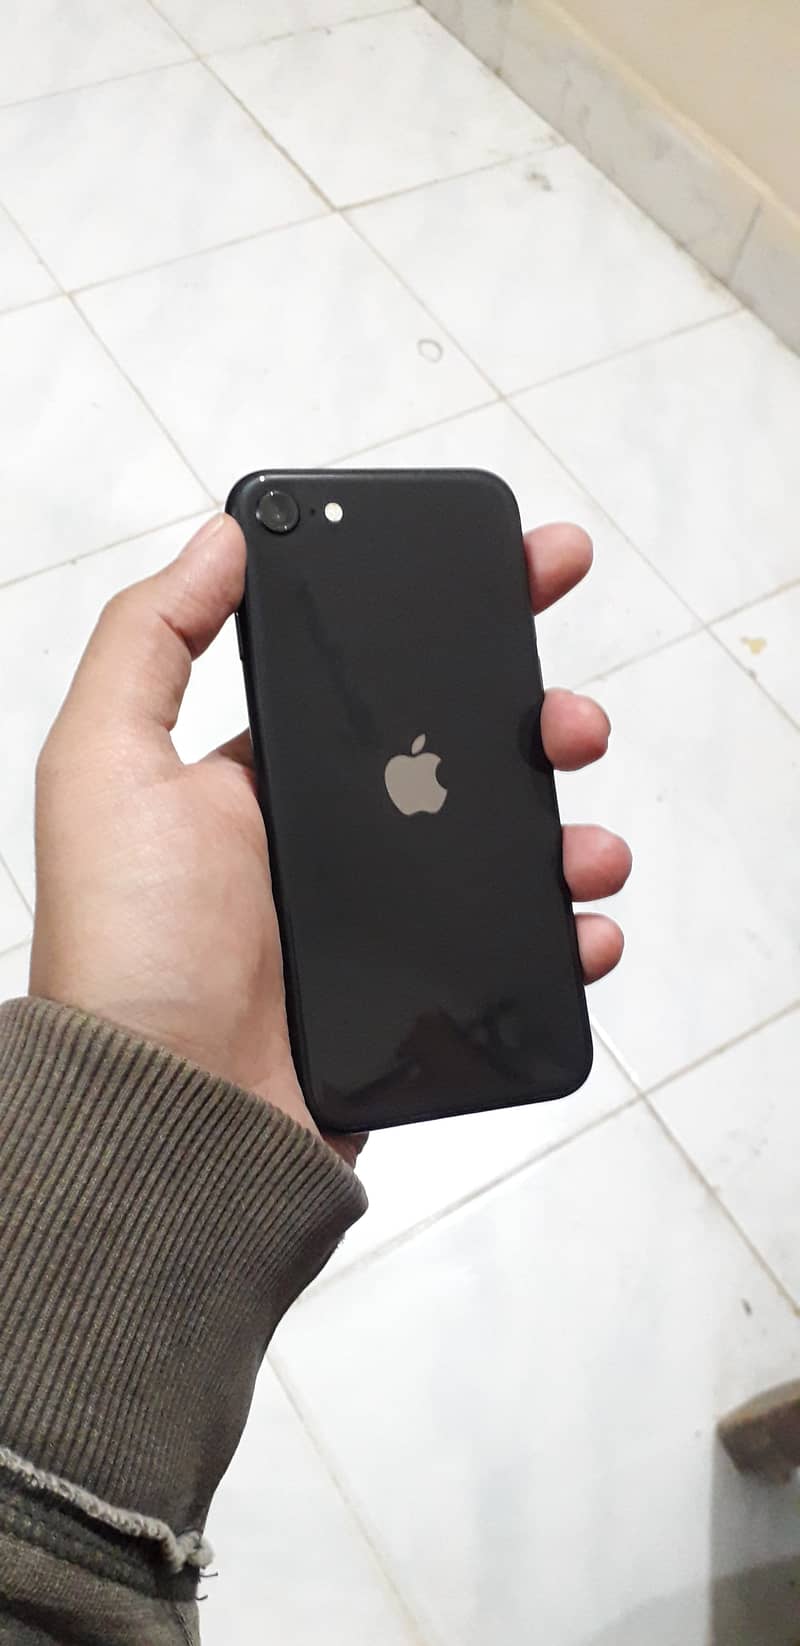 PTA approve Apple iPhone SE 2020 9